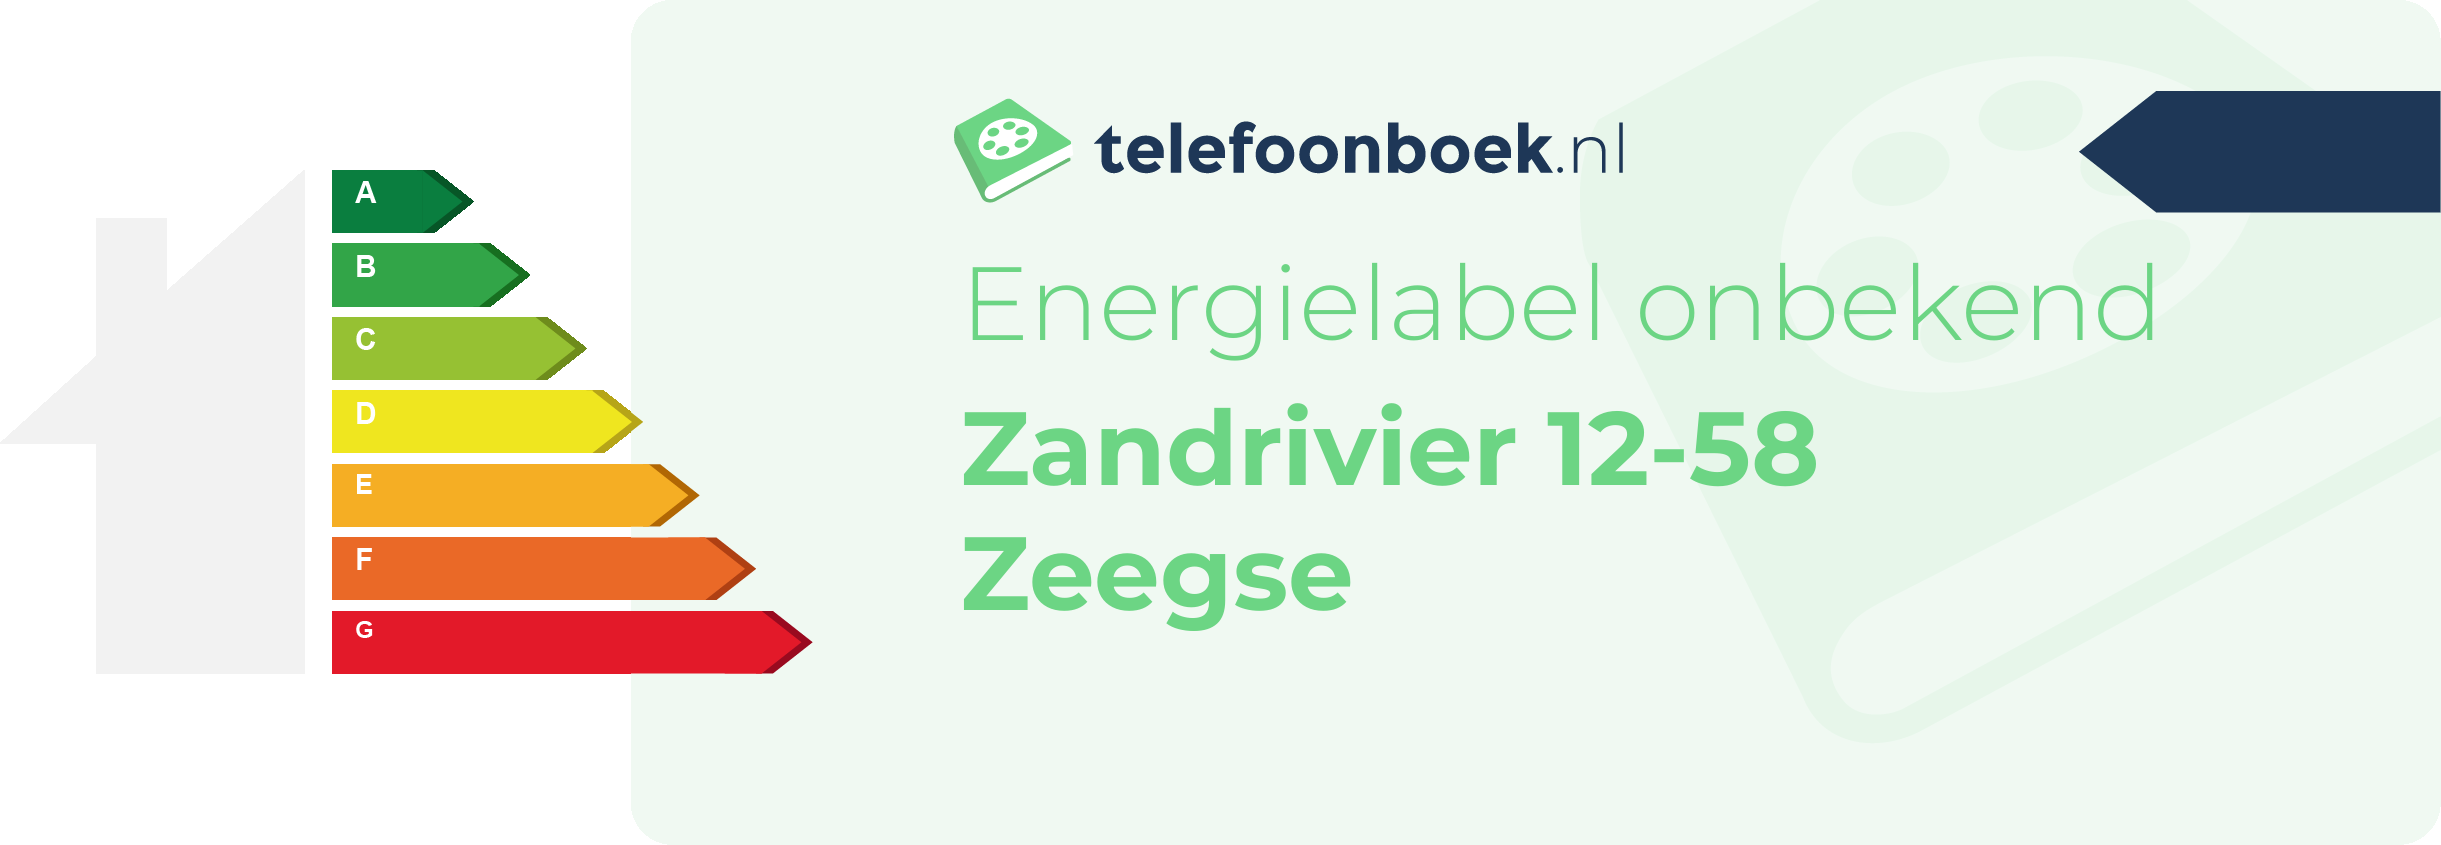 Energielabel Zandrivier 12-58 Zeegse